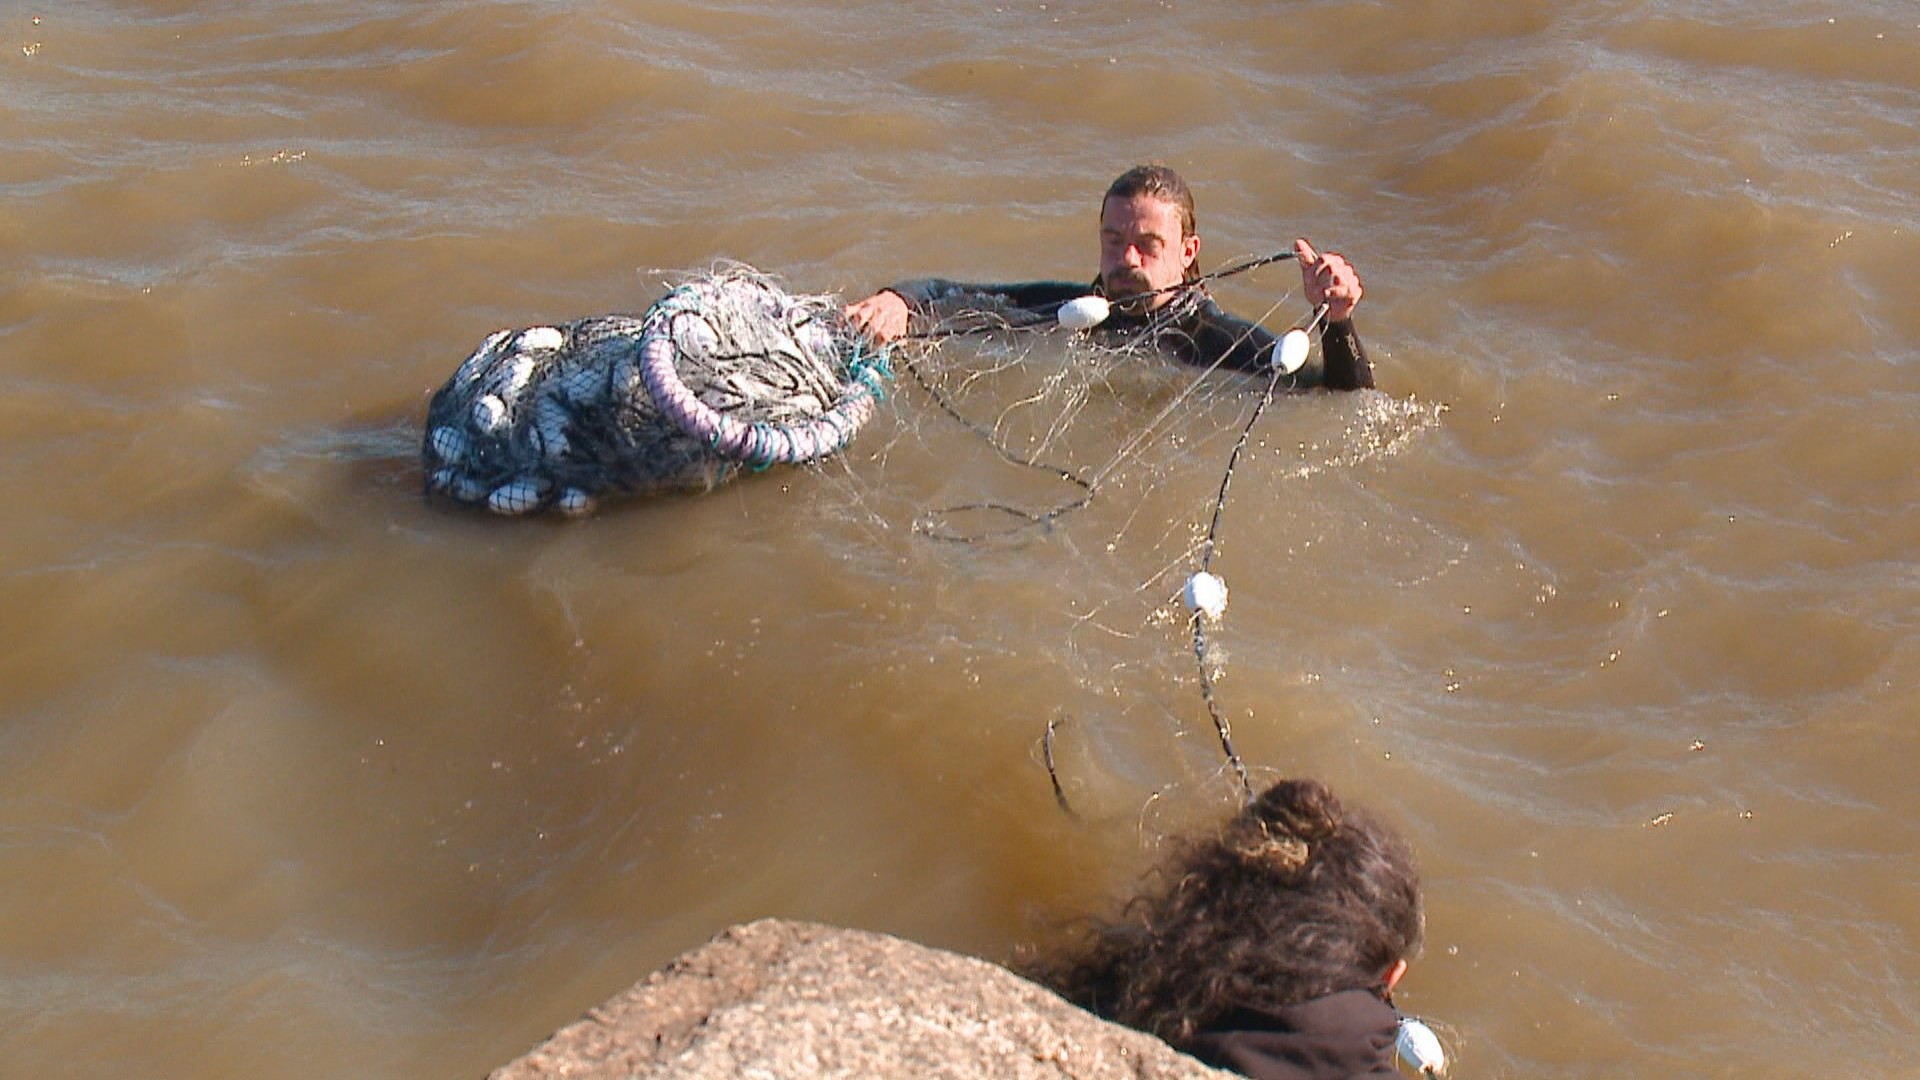 Pesquisadores investigam desaparecimento de tartarugas em praia do RS após enchente